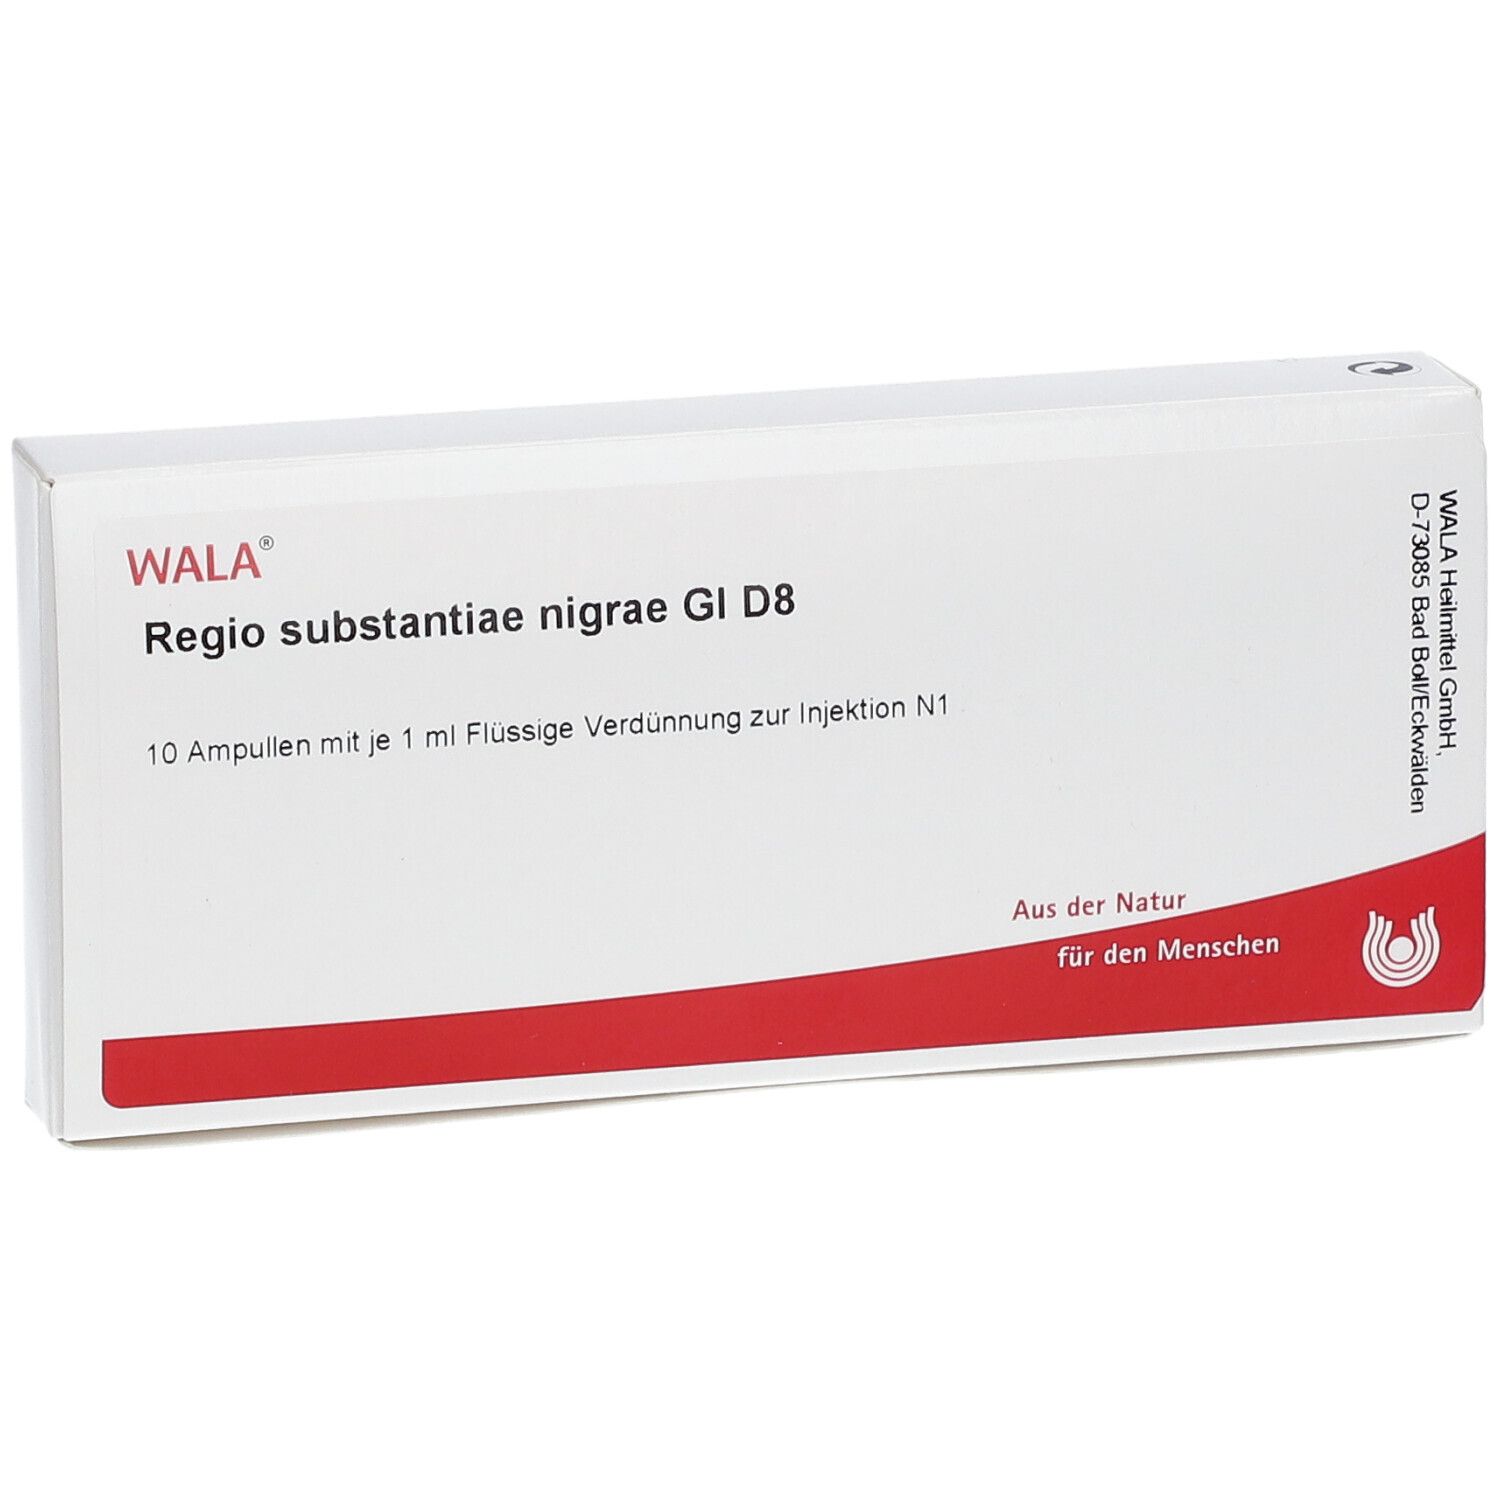 WALA® Regio substantiae nigrae Gl D 8